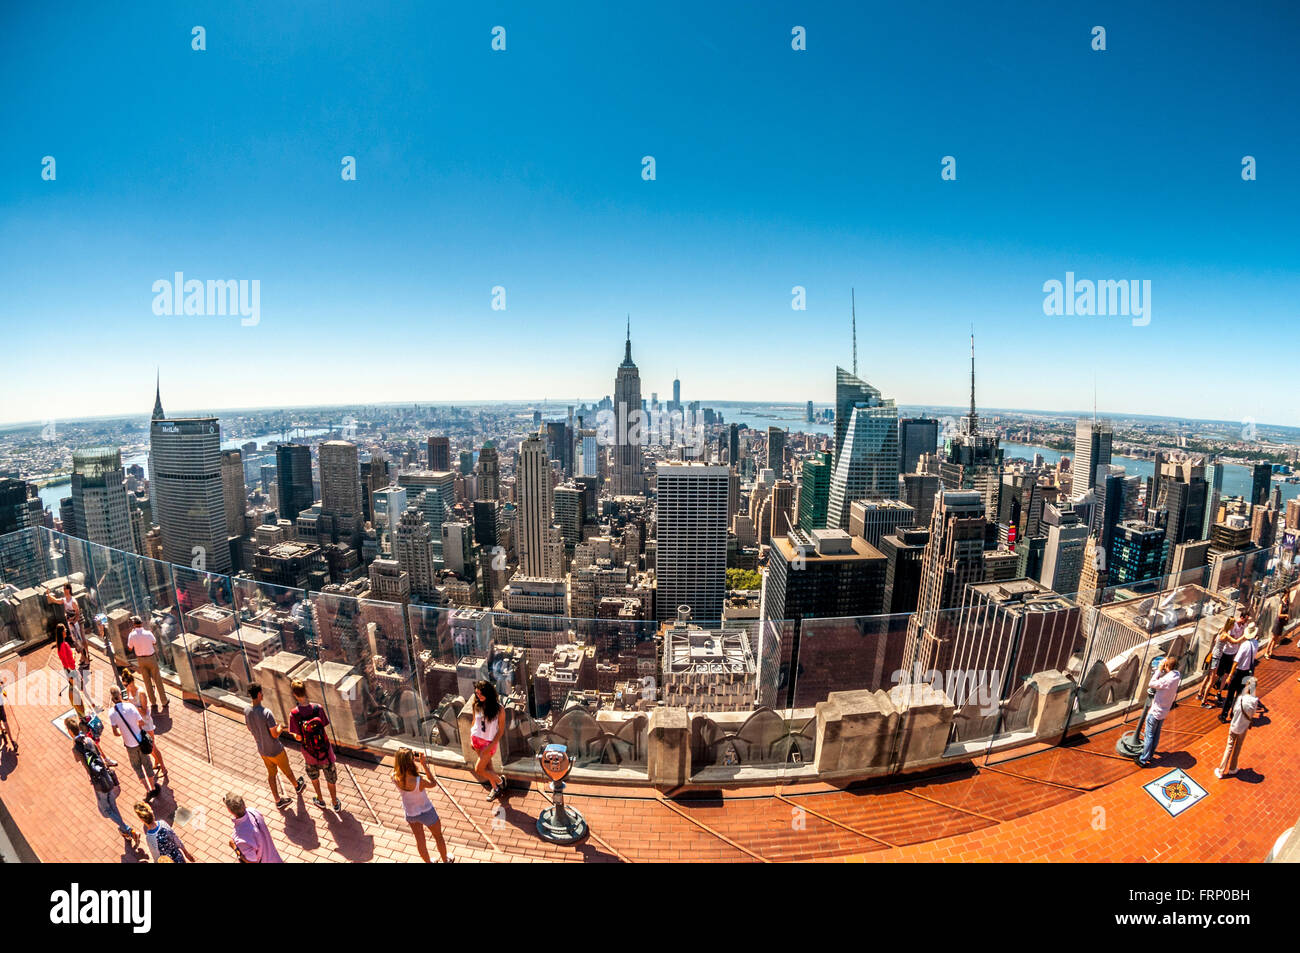 L'Empire State Building, New York City, Stati Uniti d'America, visto dalla piattaforma di osservazione del Rockefeller Center (nella parte superiore della roccia). Foto Stock